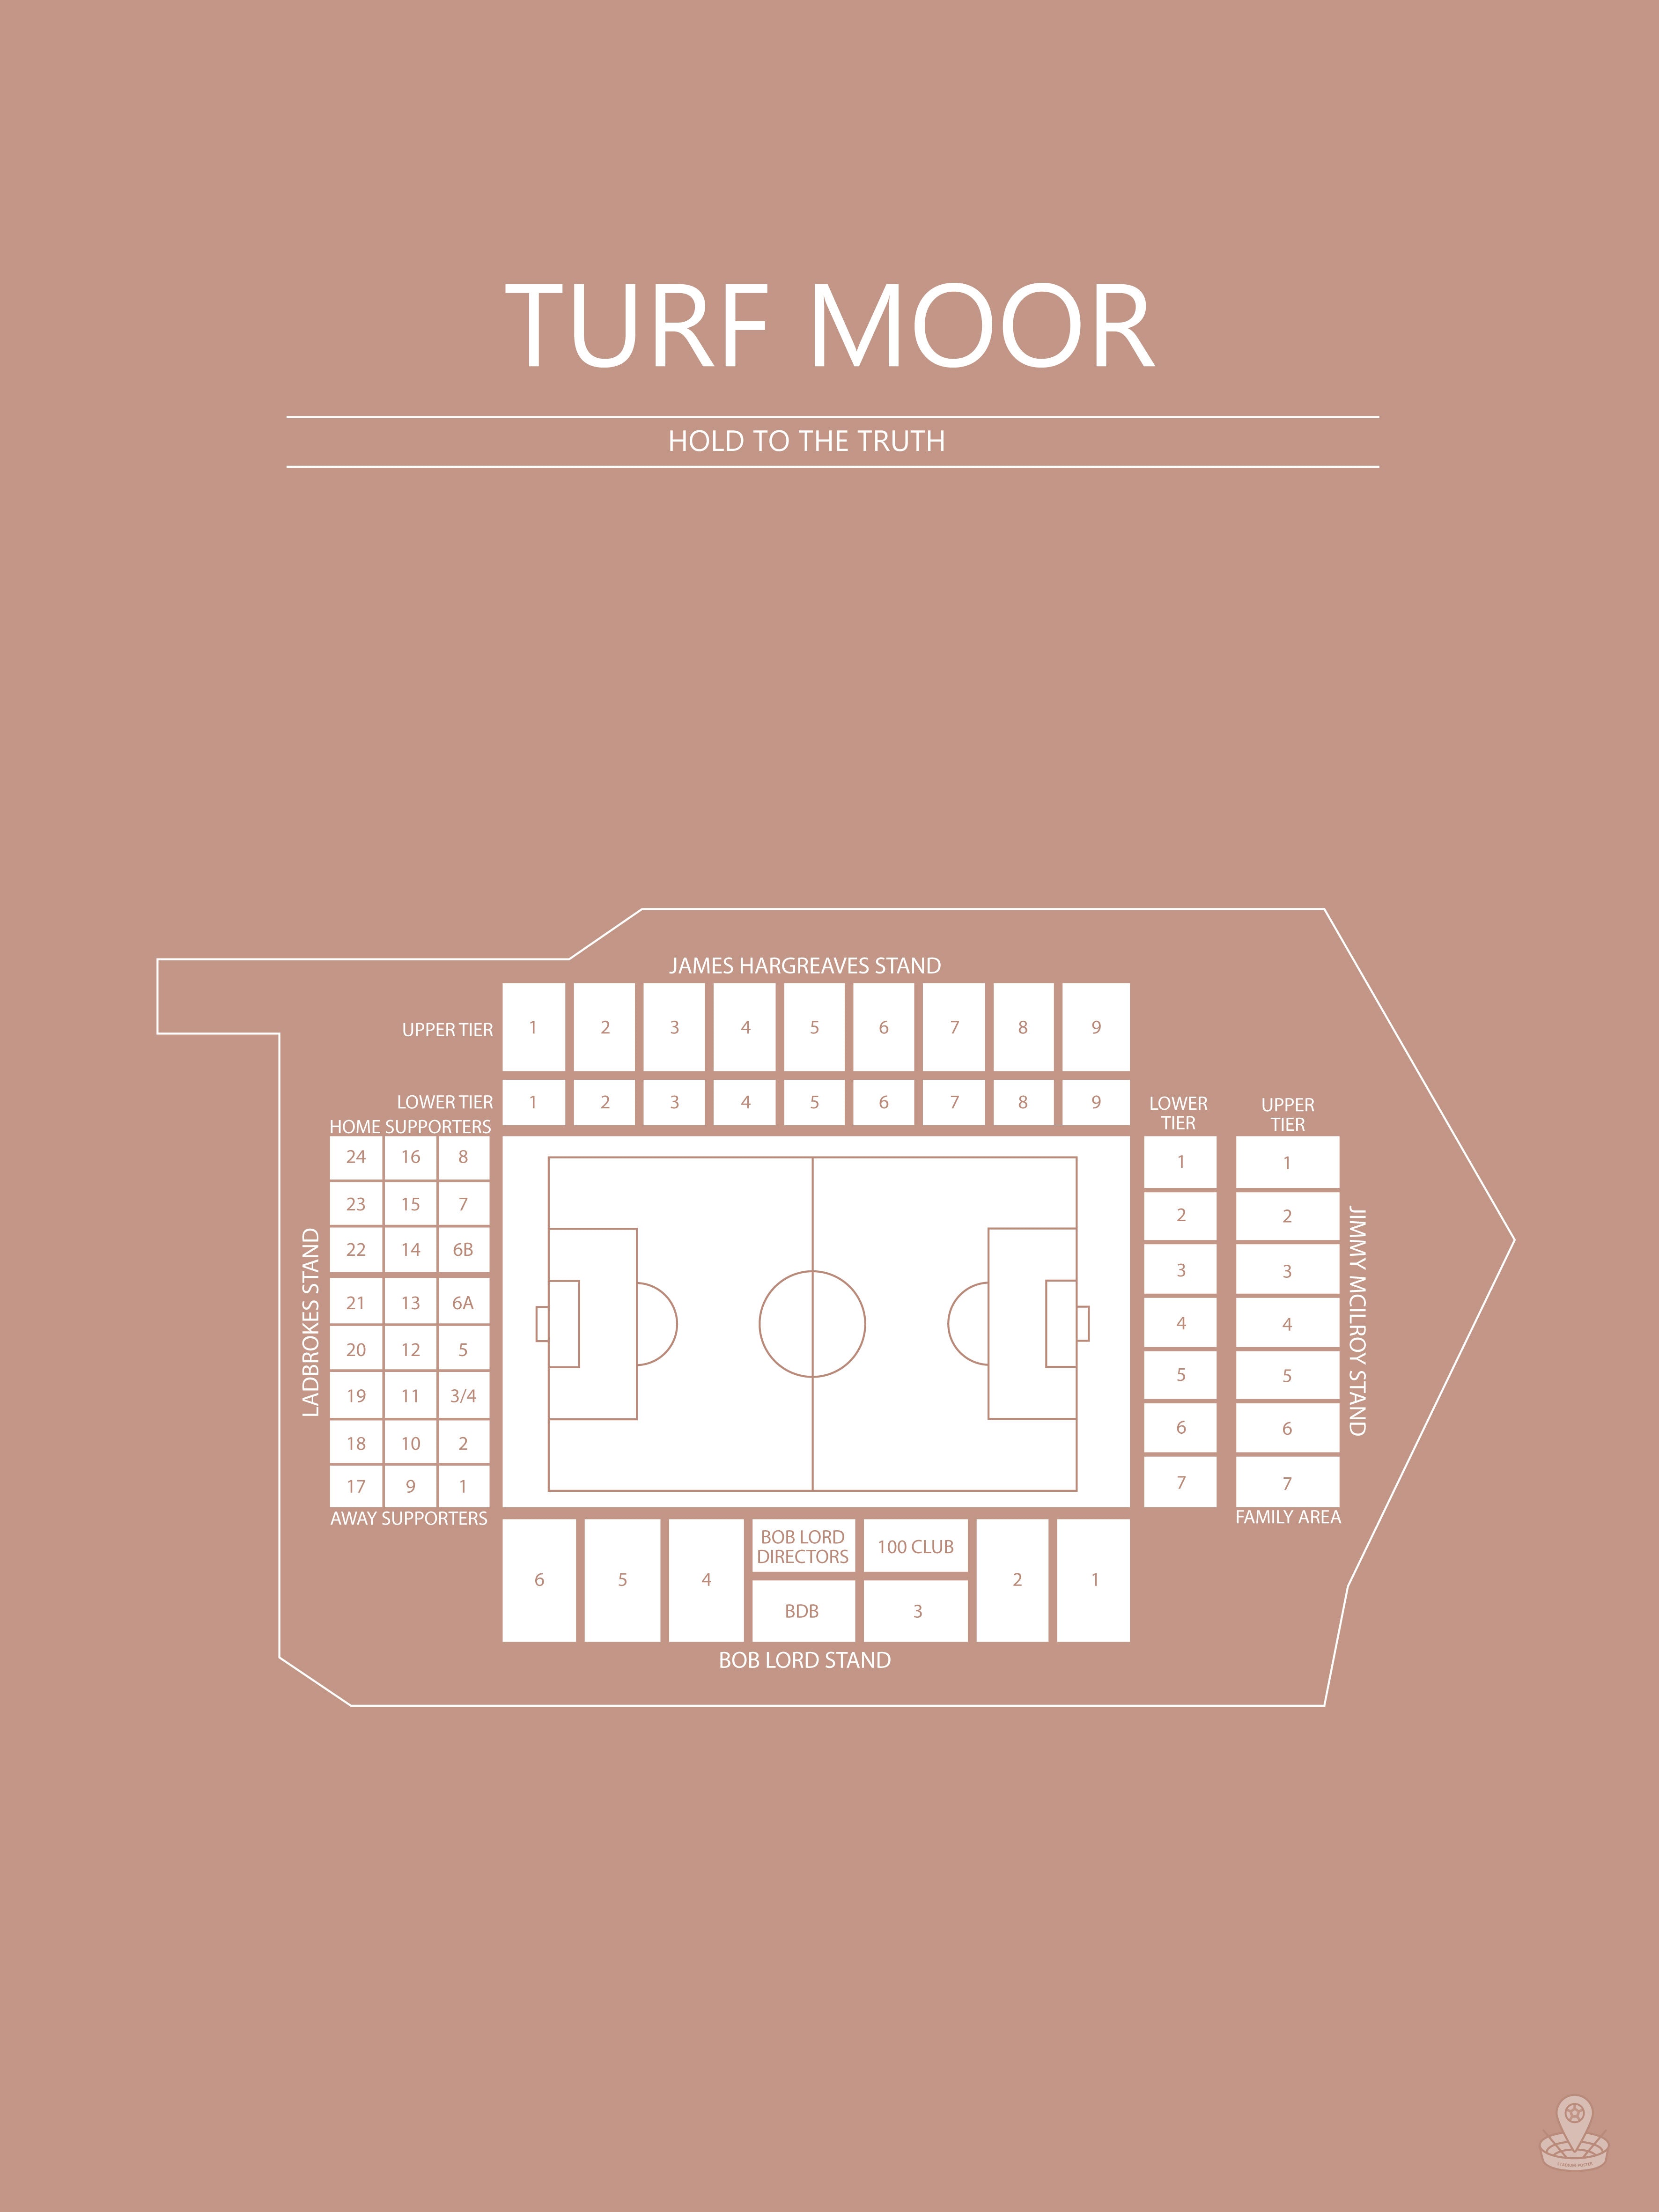 Fodbold plakat Burnley Turf Moor sahara